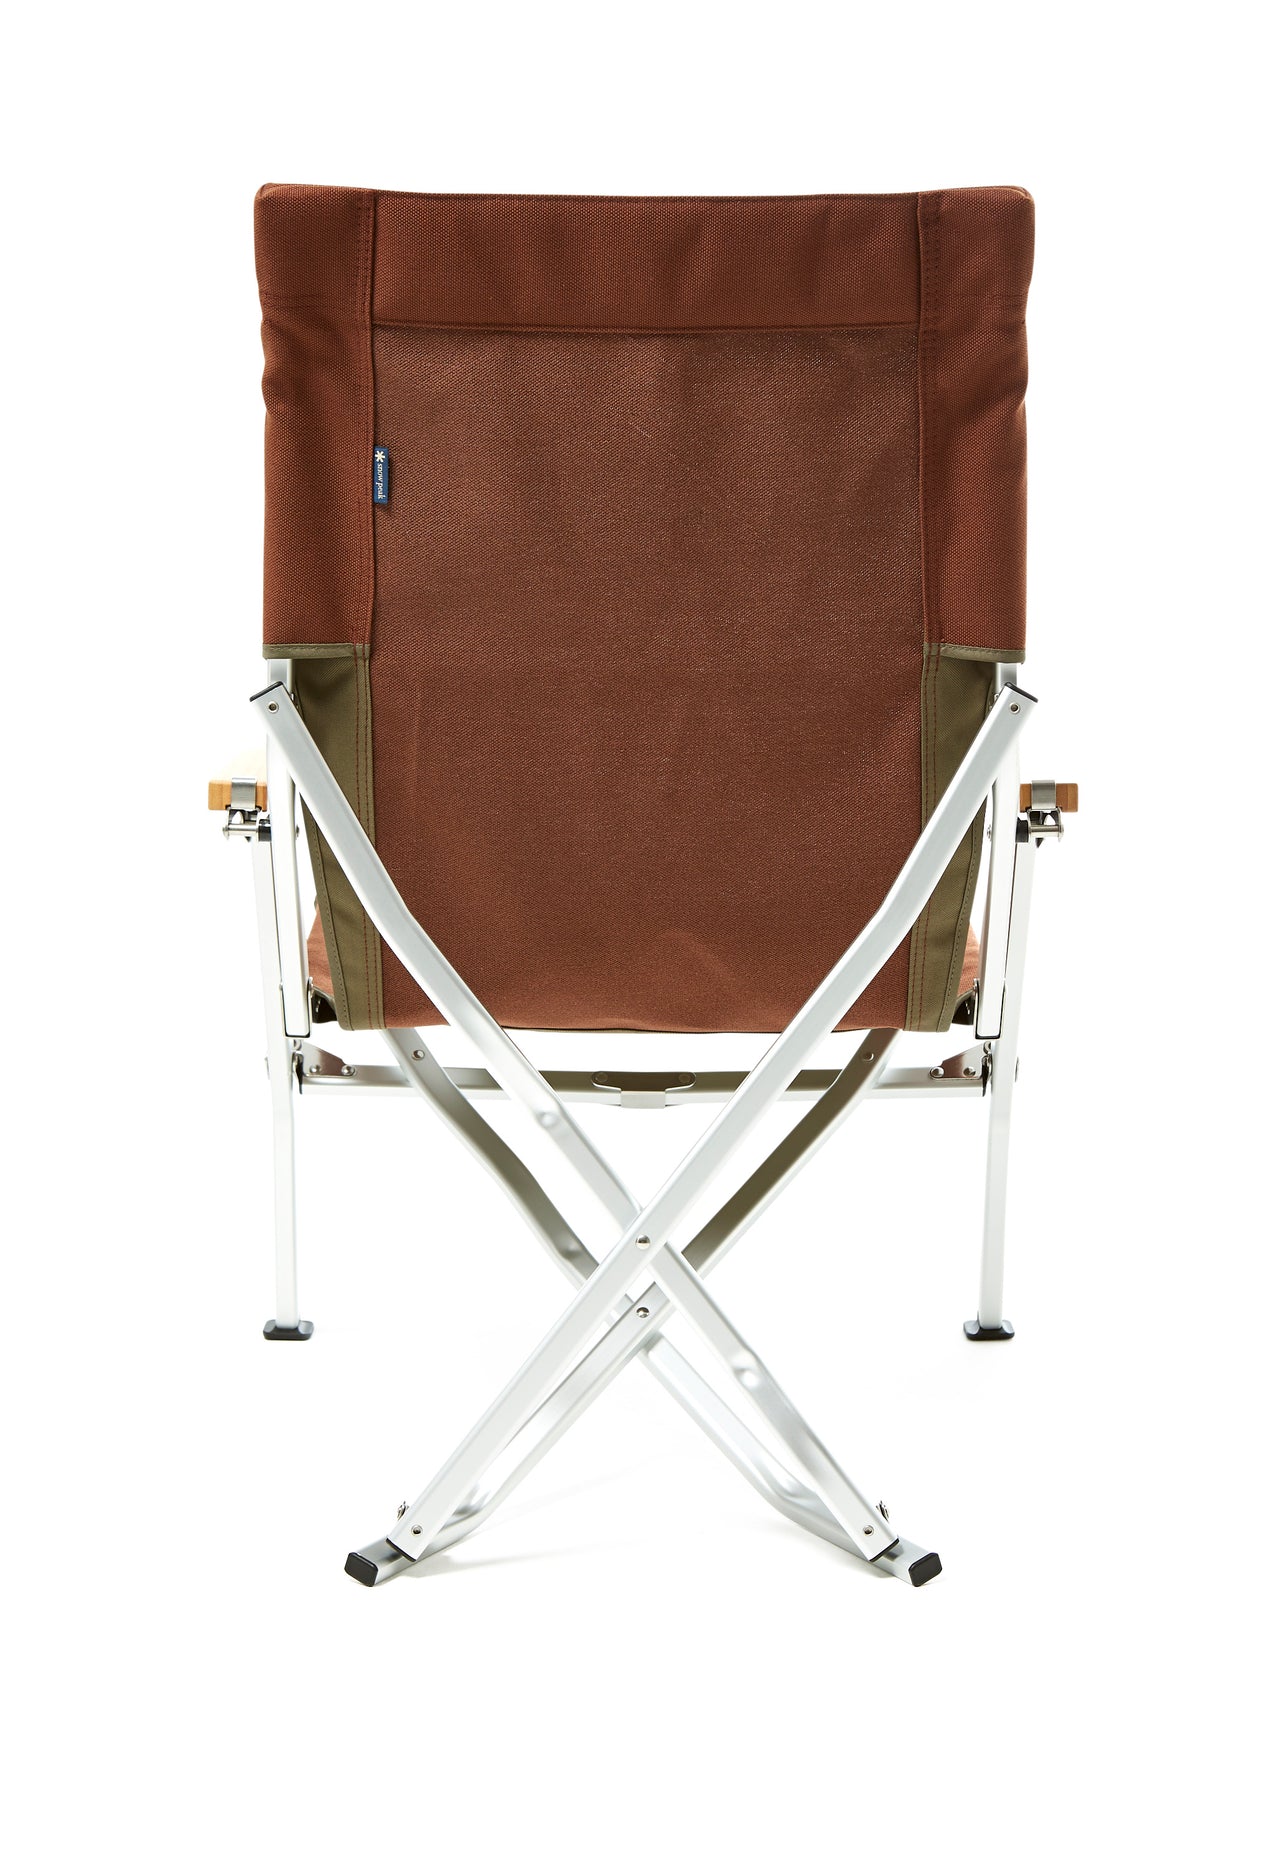 Snow Peak Low Chair 30 - Brown